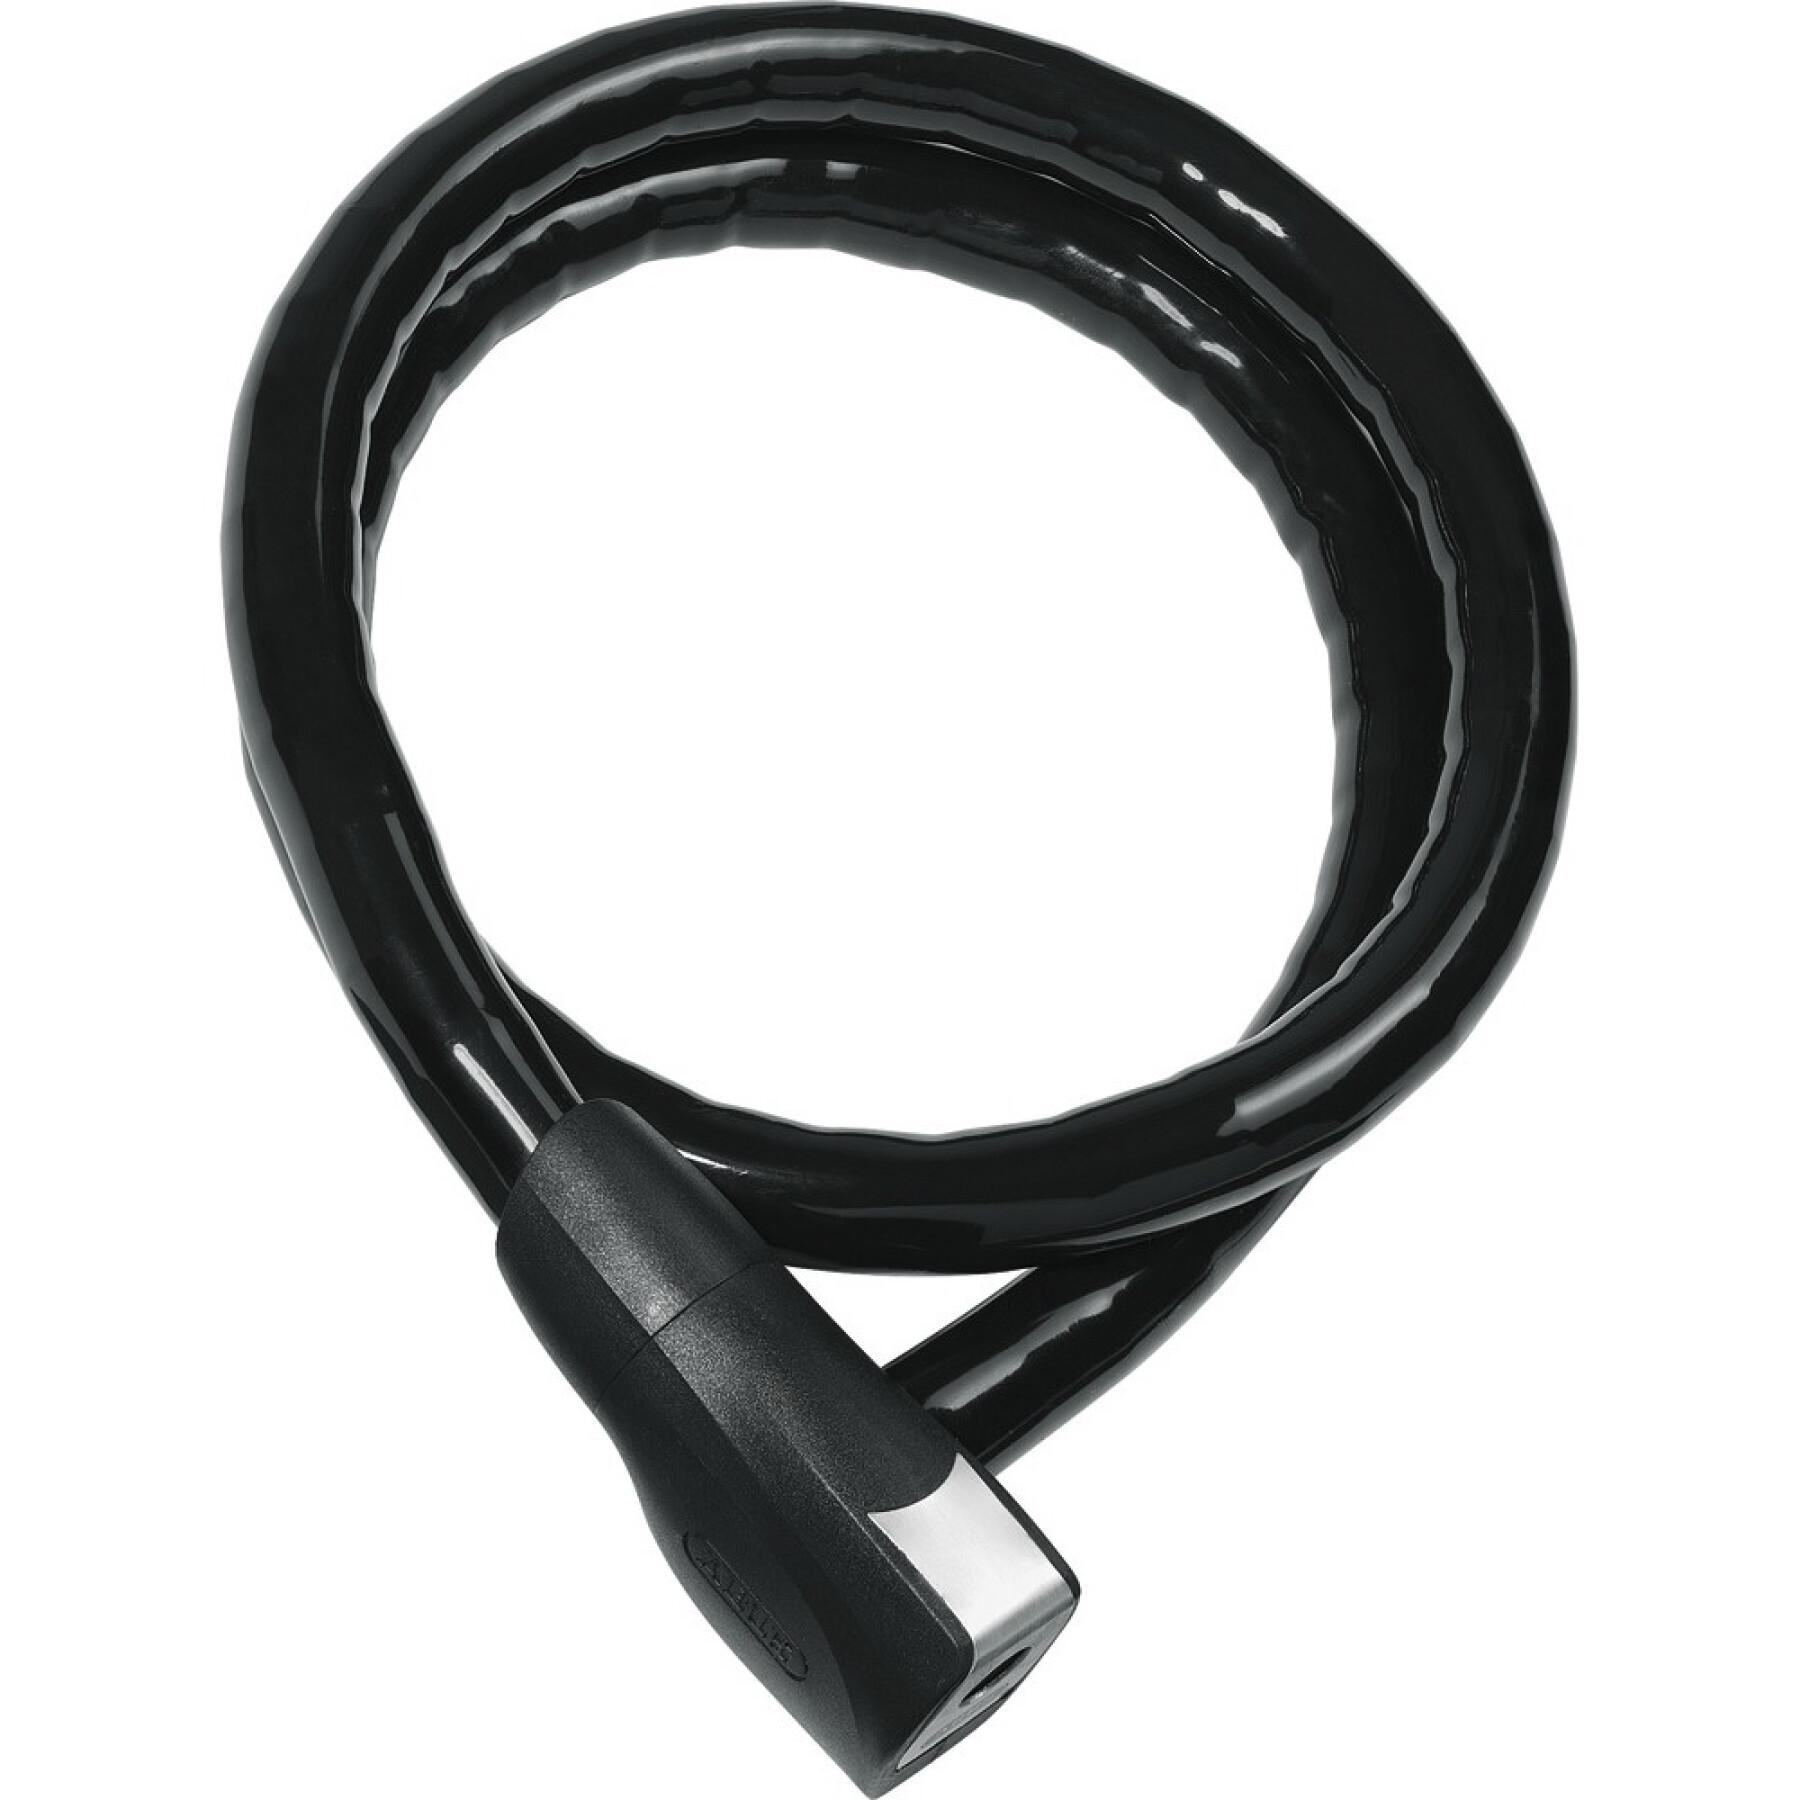 Cable lock Abus Centuro 860/110